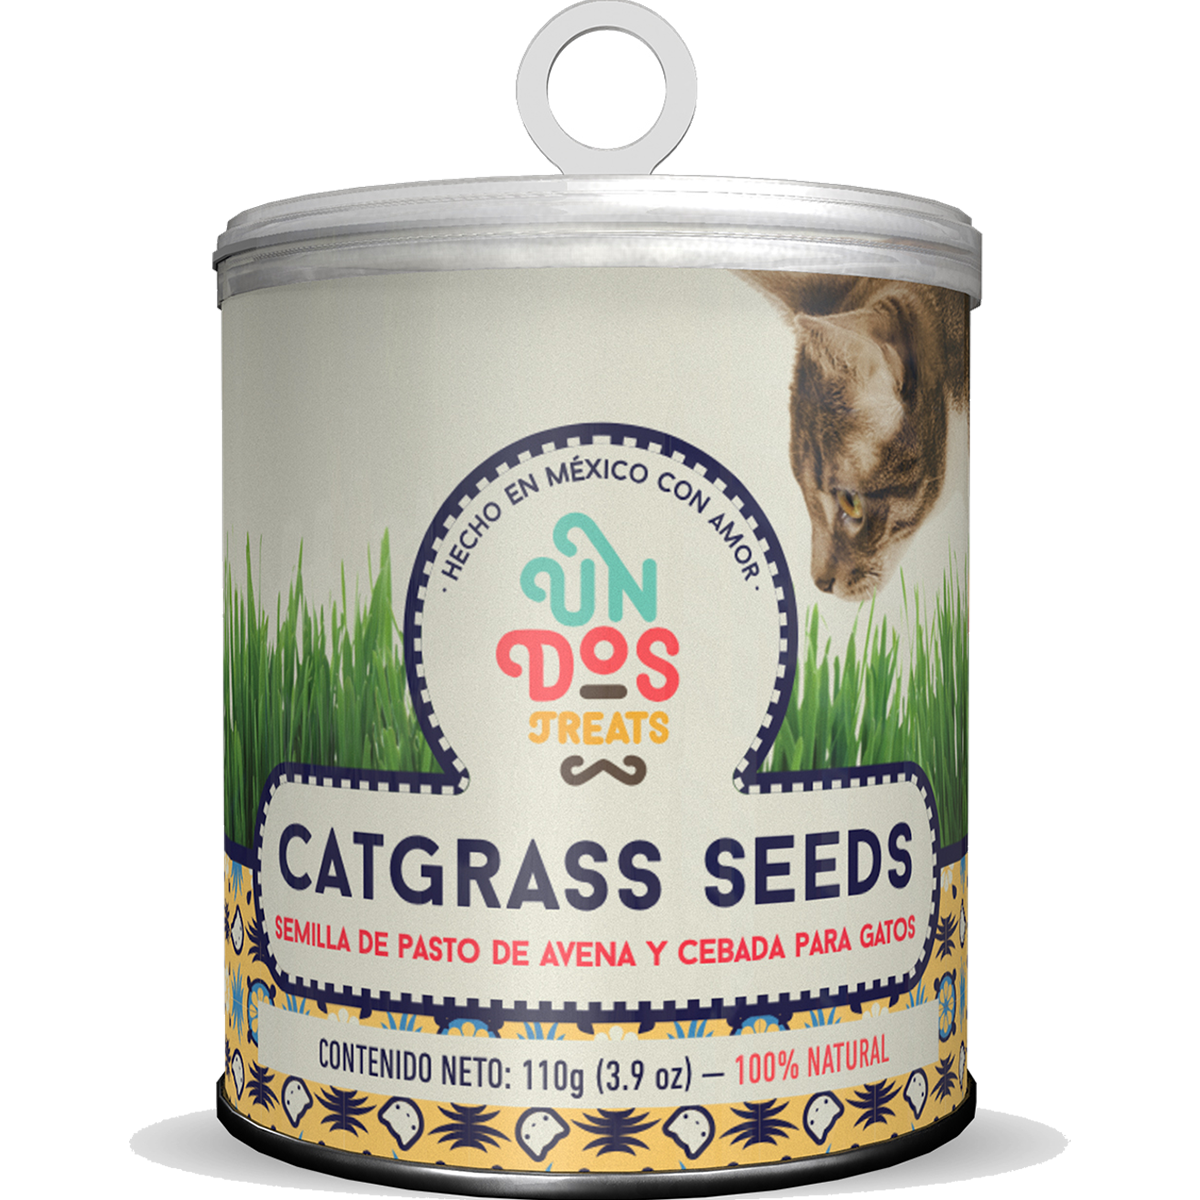 Catgrass Seeds Semillas de pasto Avena y Cebada para Gatos Un Dos Treats